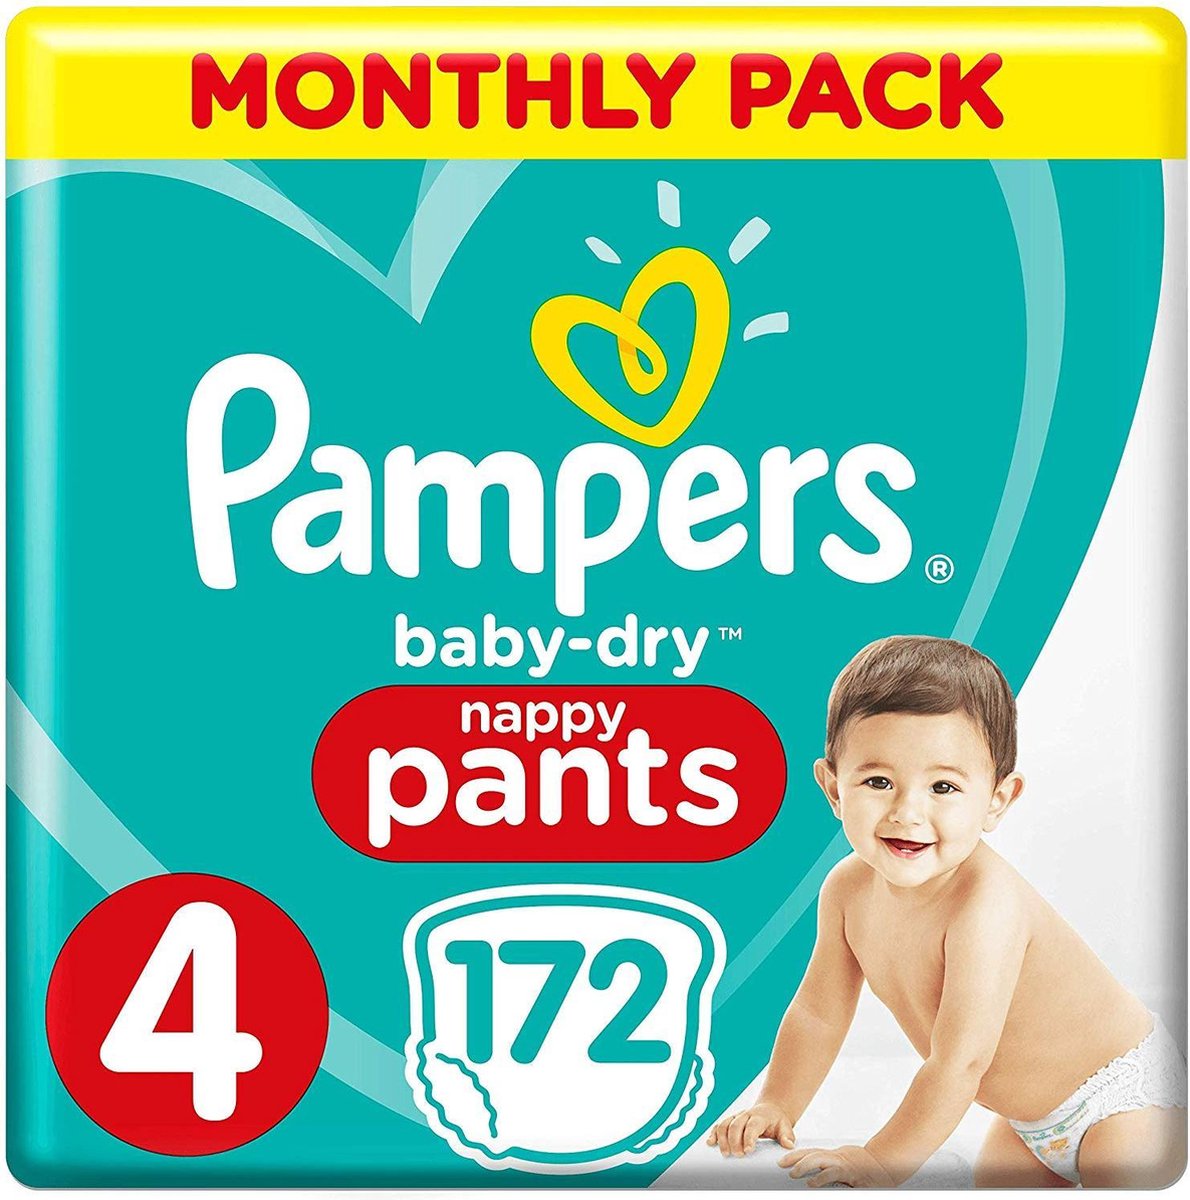 Pampers Baby-Dry Pants Luierbroekjes - Maat 4 - 172 stuks - Pampers